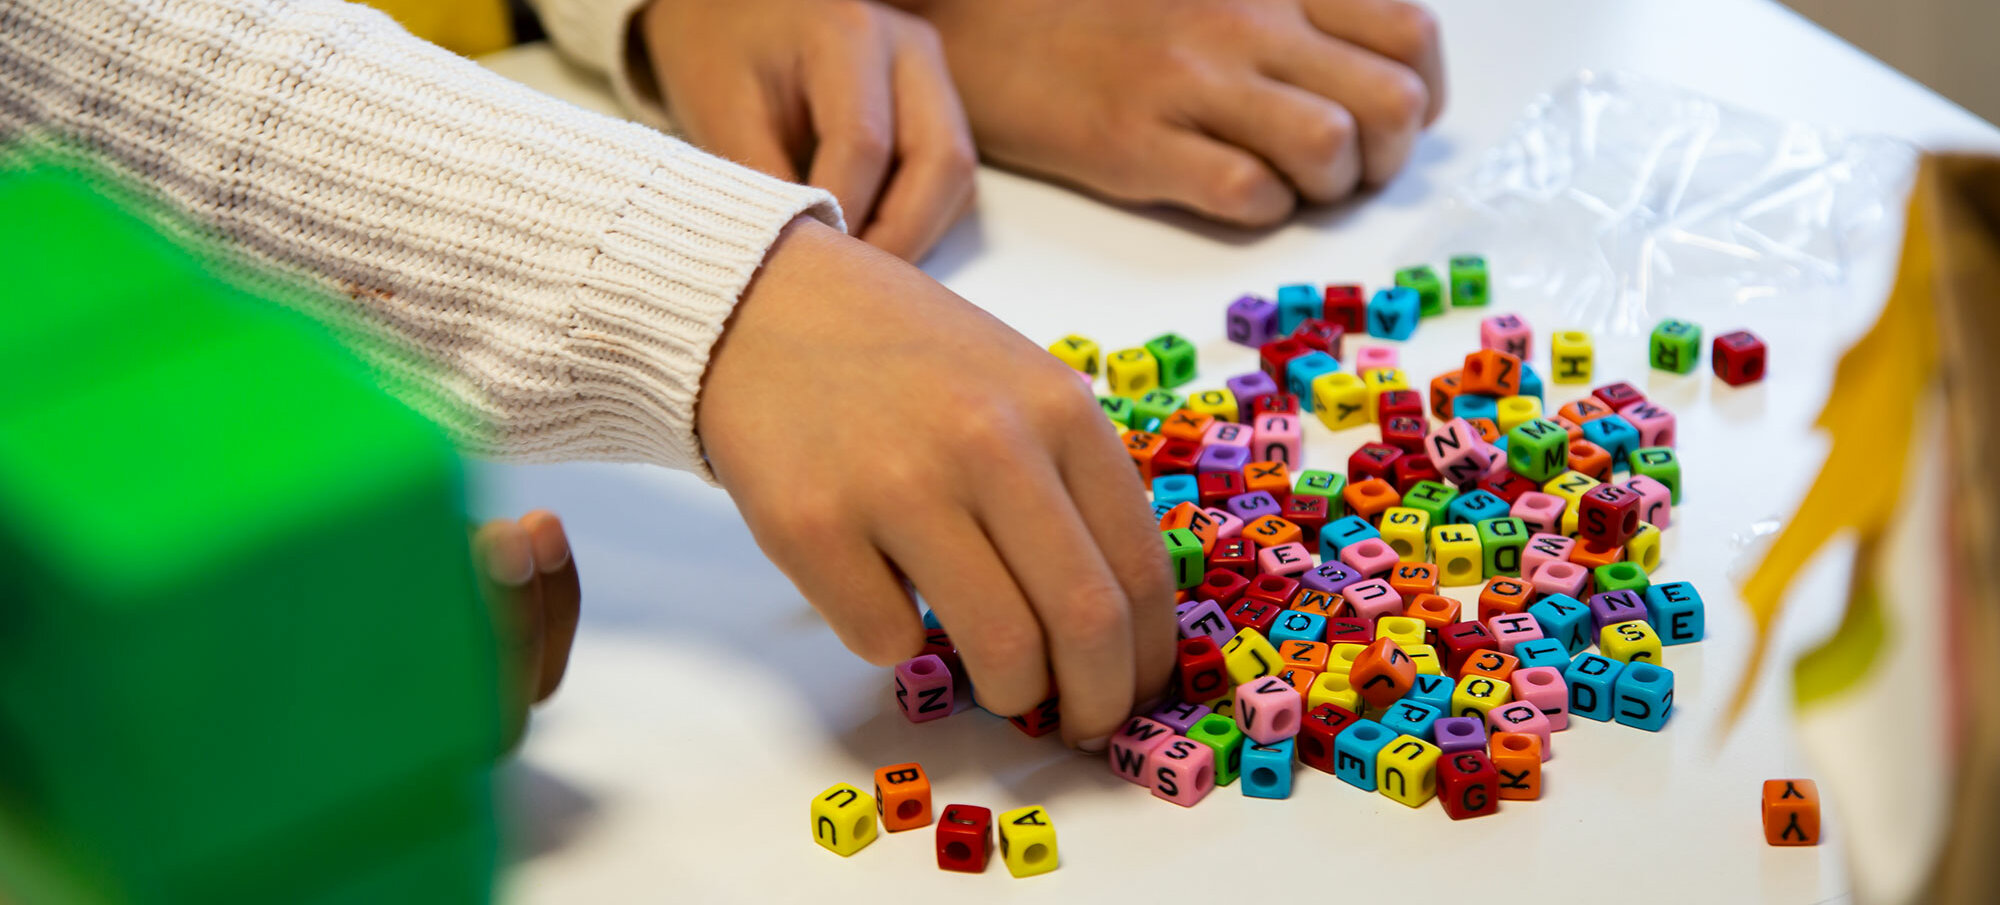 Primo piano delle mani di tre bambini su un tavolo. Un bambino ha allungato il braccio per prendere delle perline colorate a forma di lettera da un mucchietto.